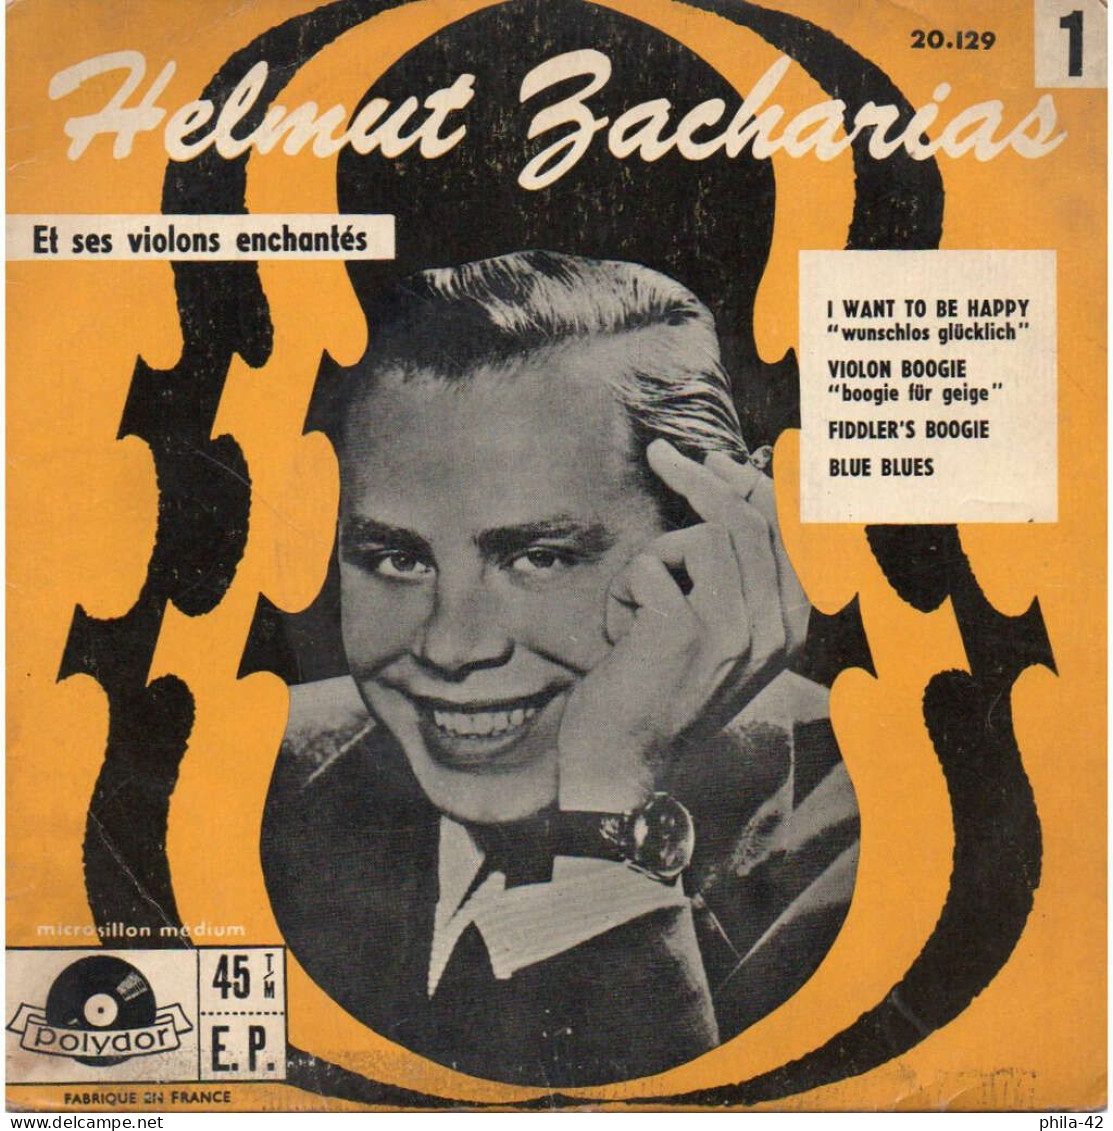 Helmut Zacharias Et Ses Violons Enchantés - Vinyle 45 Tours 1958 - Polydor N° 20.129 - Classical